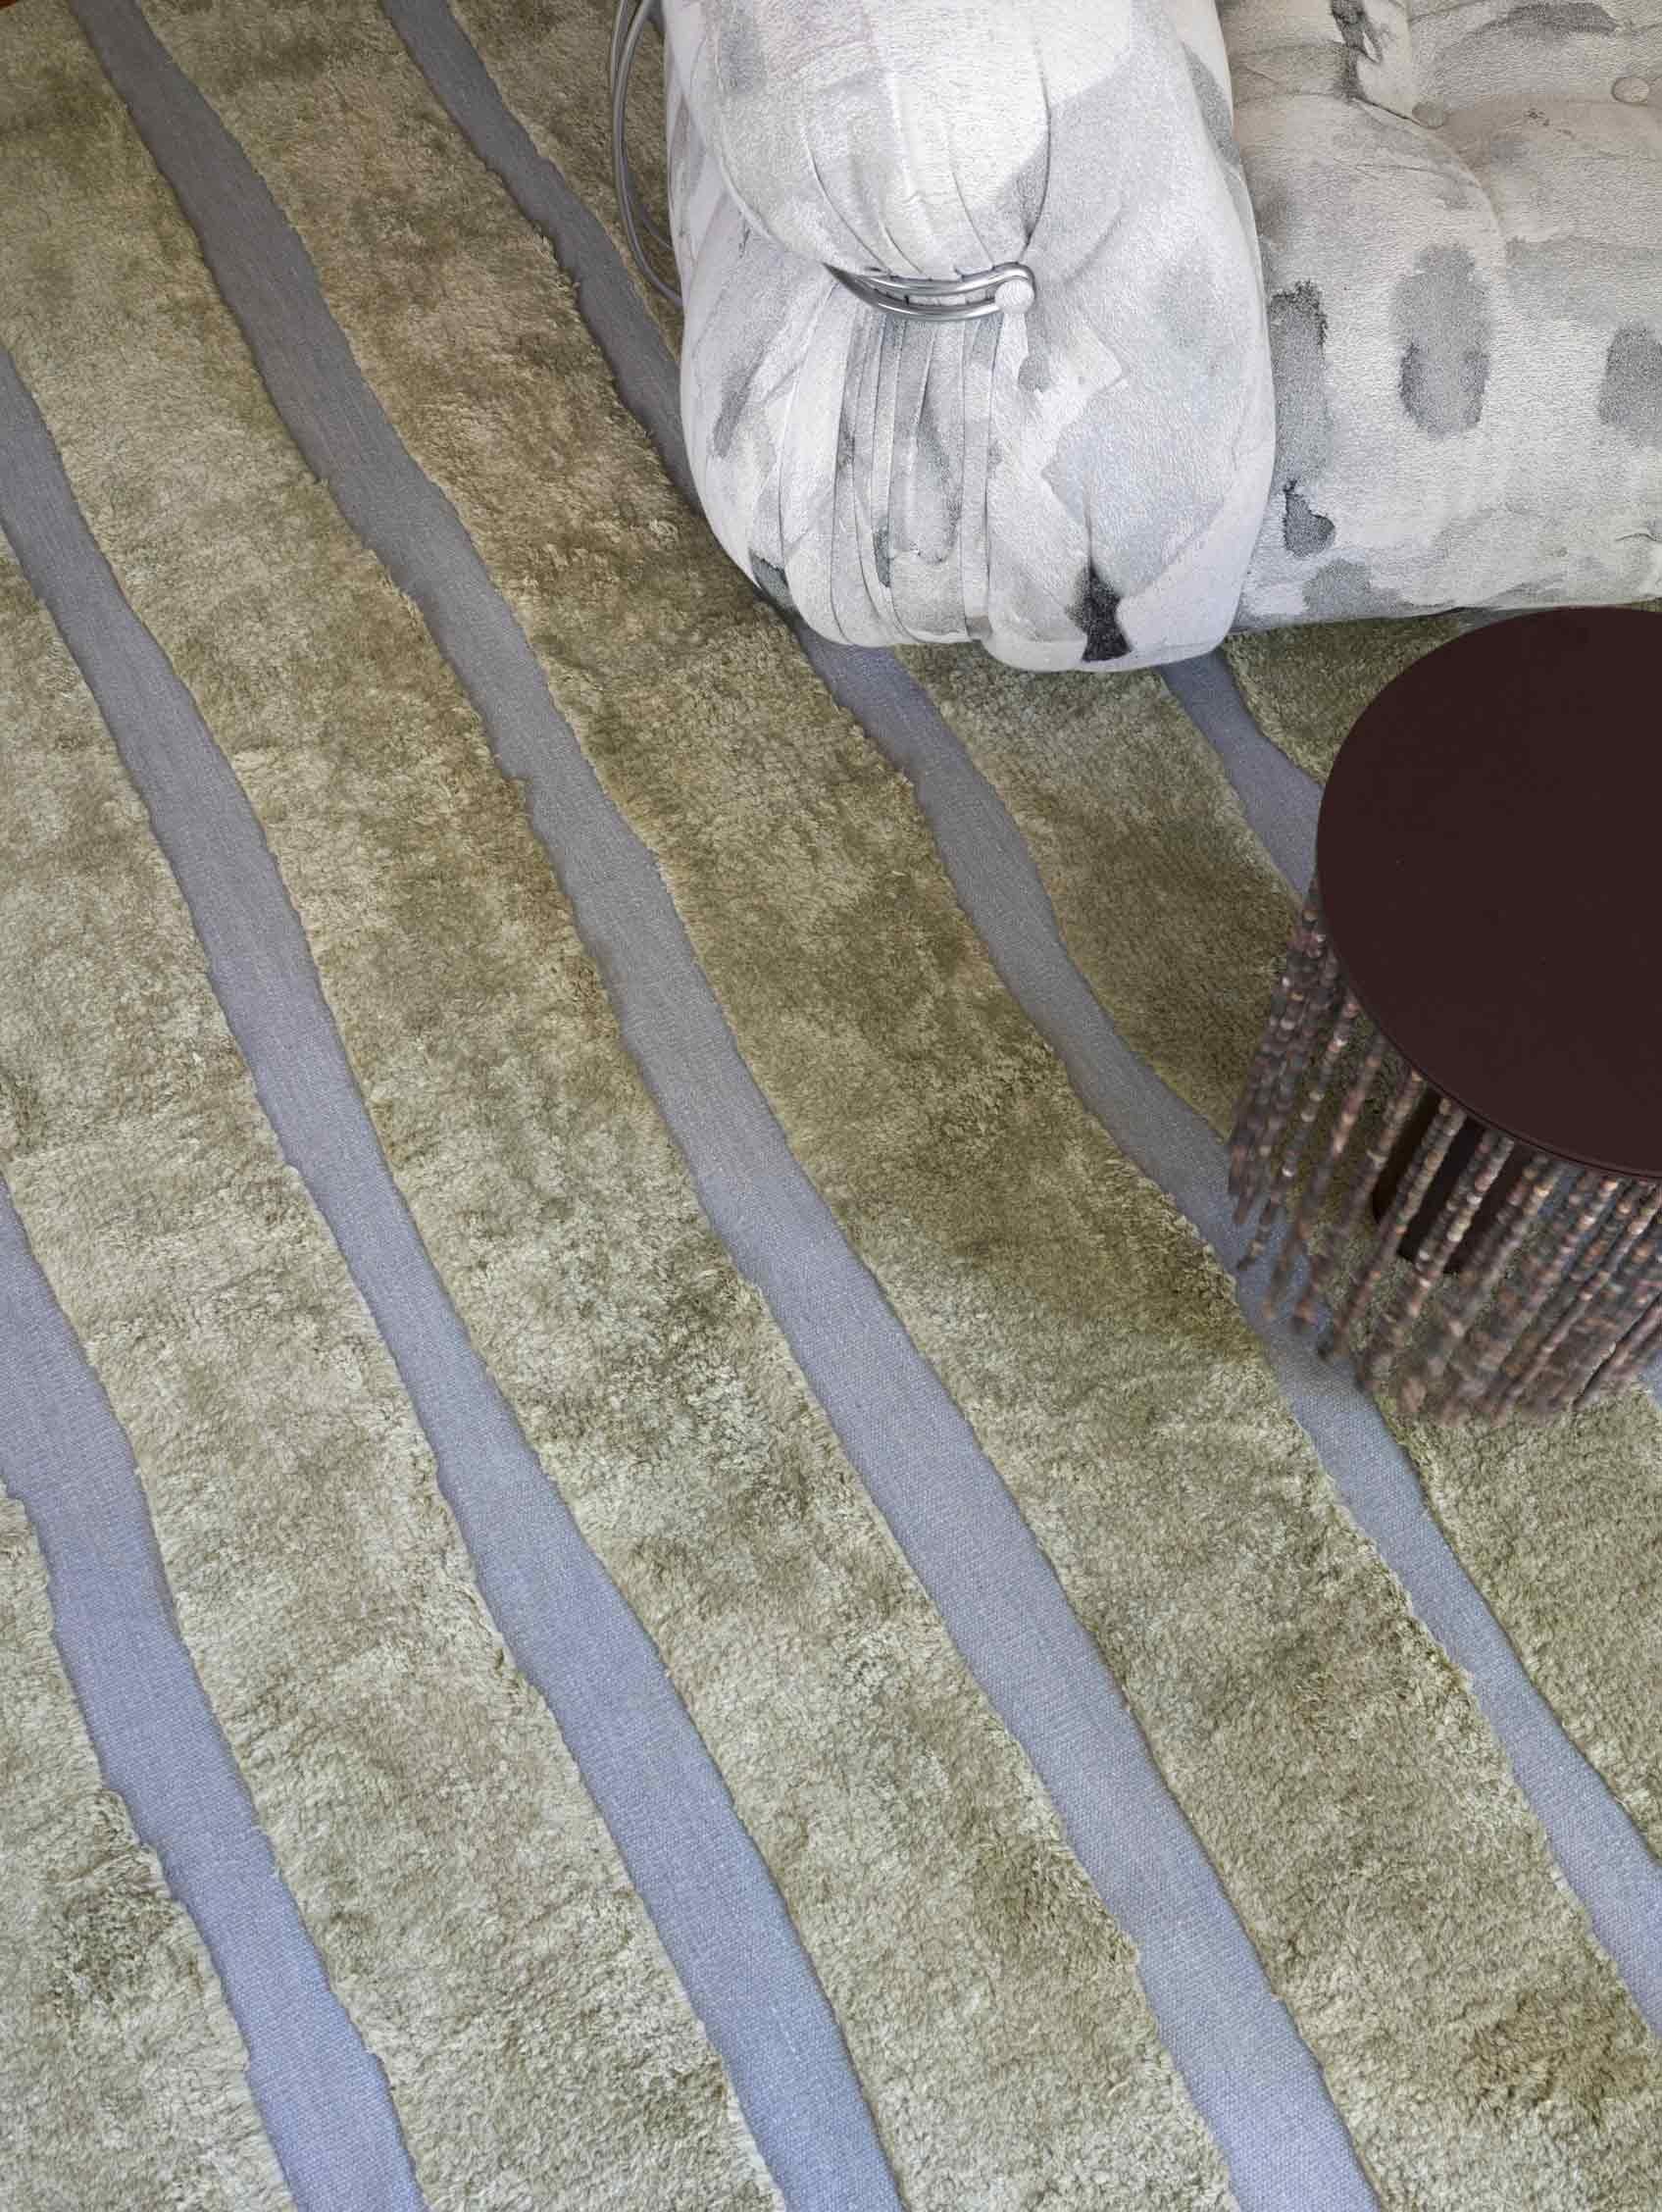 Muster des Teppichs: Bold Stripe - Golf
MATERIAL: Merino Wool Pile/ New Zealand Wool Flat-weave
Qualität: Wolle Flachgewebe & marokkanischer Flor, 10mm Flor, handgewebt 
Größe: 9'-0